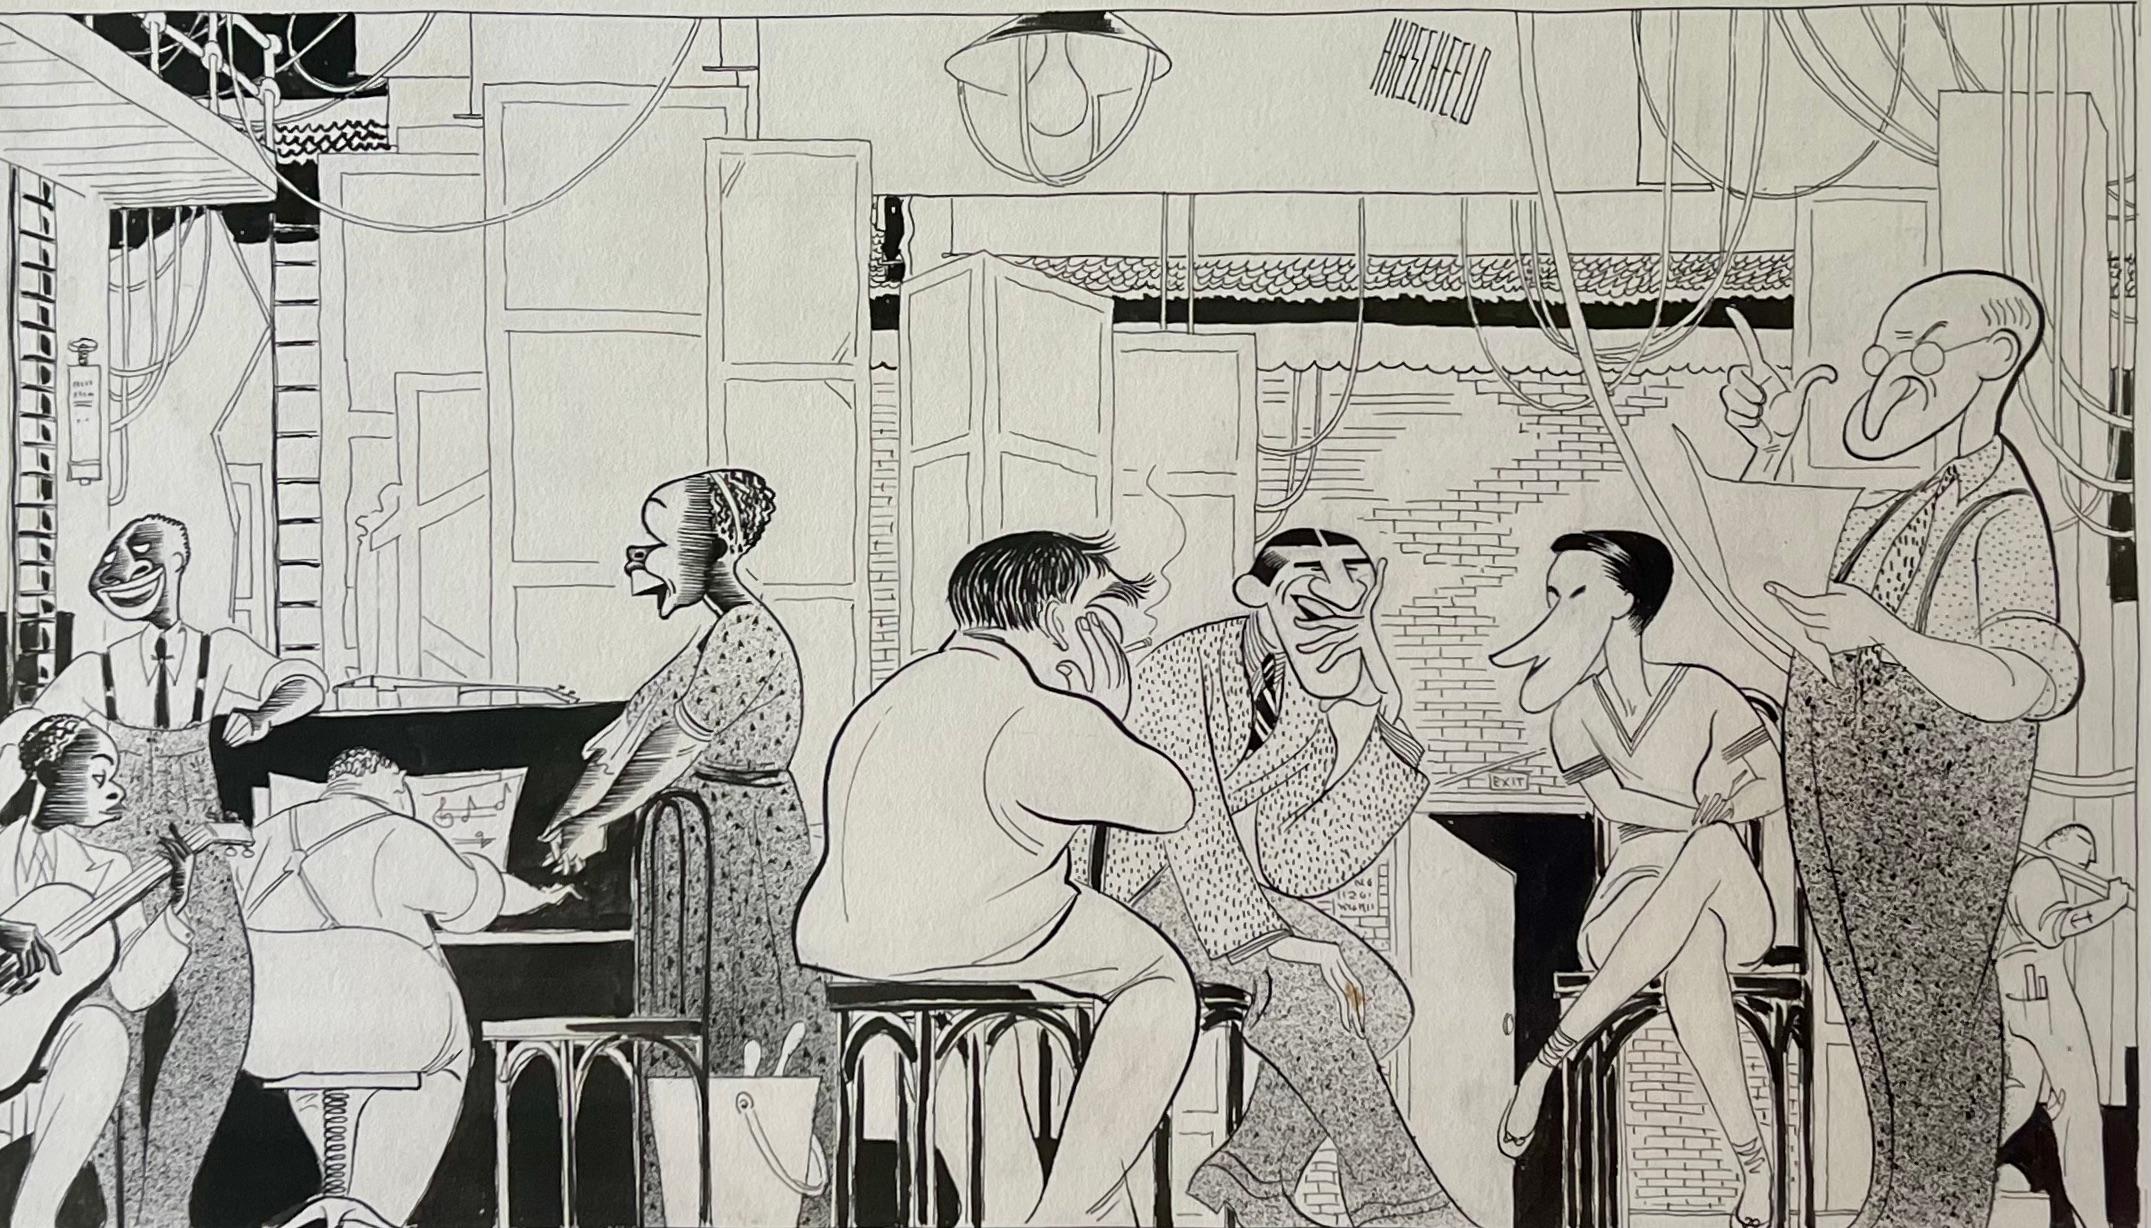 Interior Art Albert Al Hirschfeld - « At Home Abroad », pièce de Broadway datant de 1935, illustration publiée dans le NY Times 20e siècle